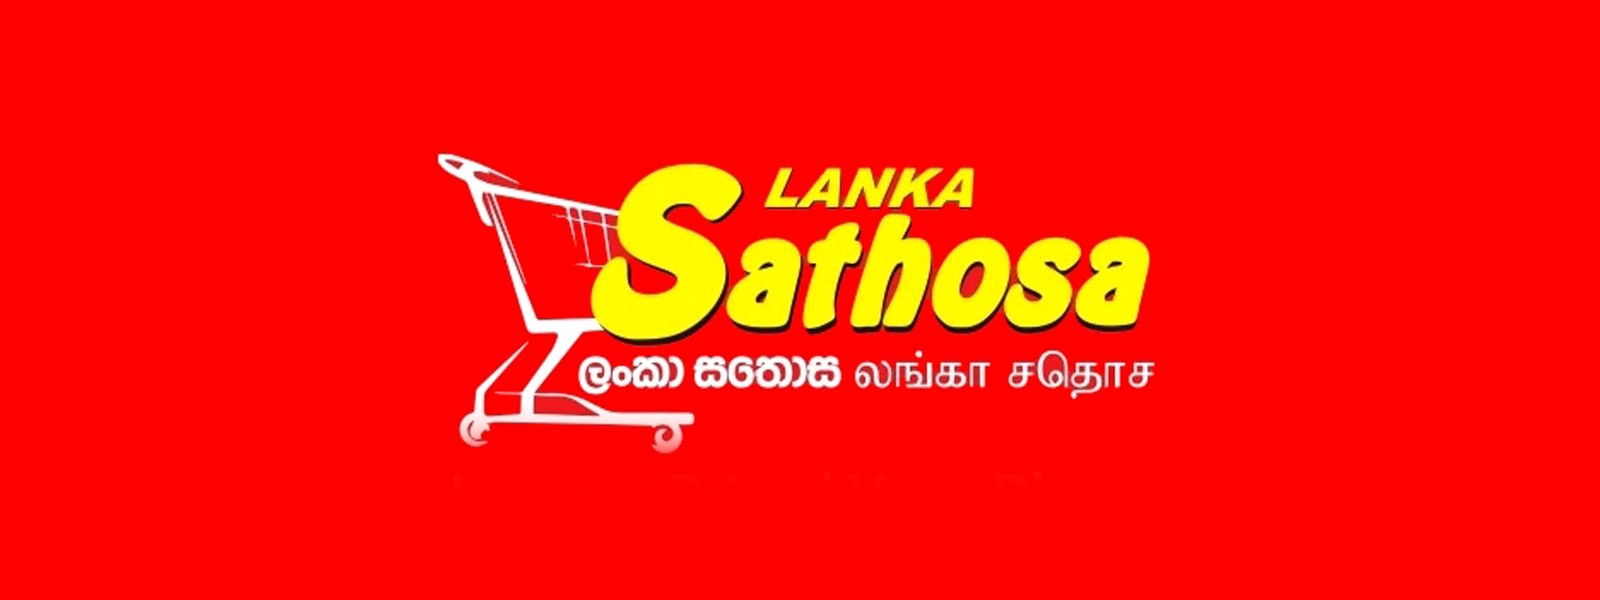 Sathosa reduces prices of six essentials